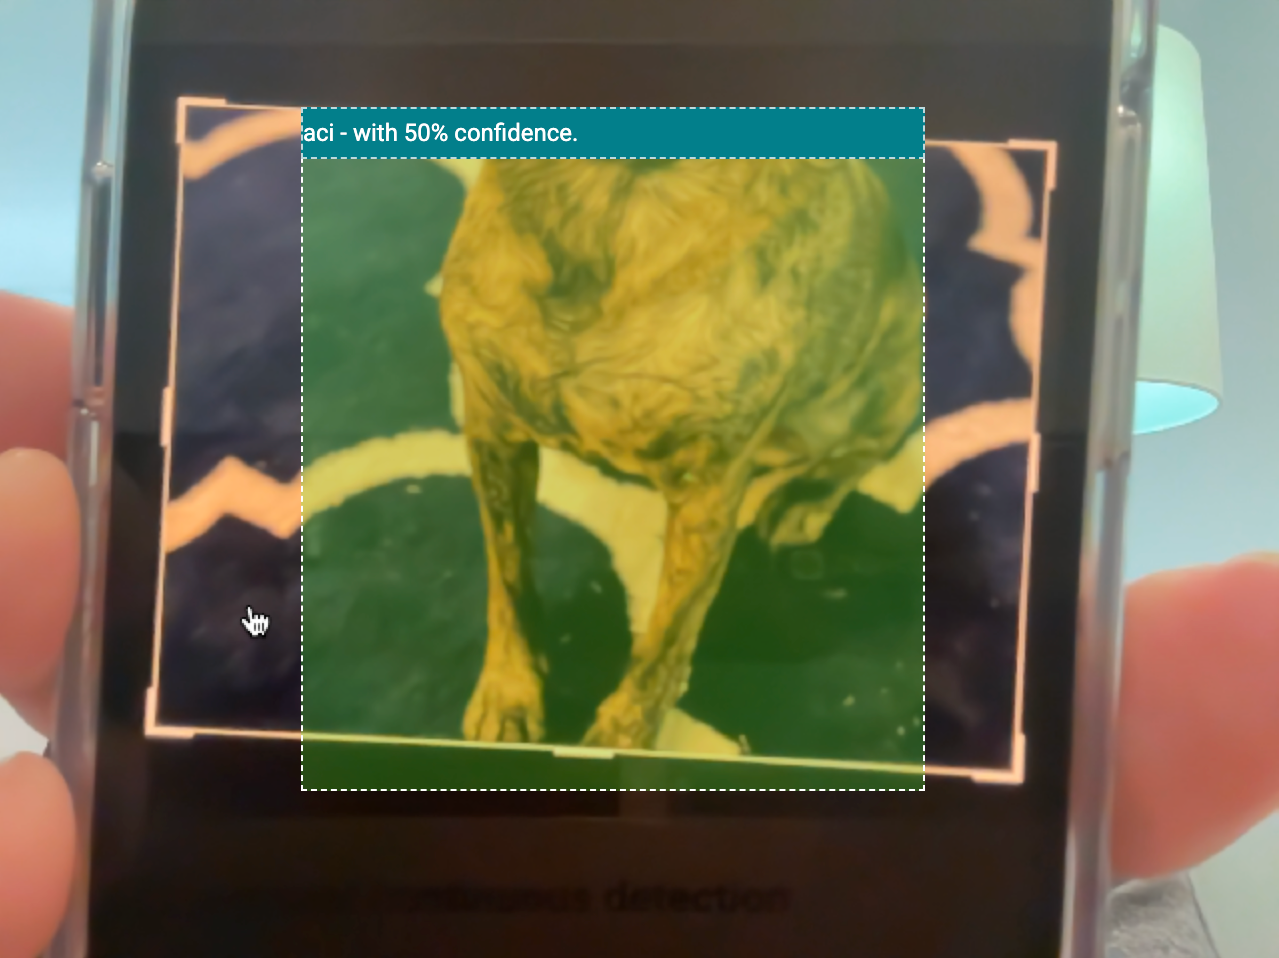 Bild, das einen Teil des Fotos des Hundes des Autors zeigt, der vom Modell mit 50 %iger Sicherheit erkannt wird